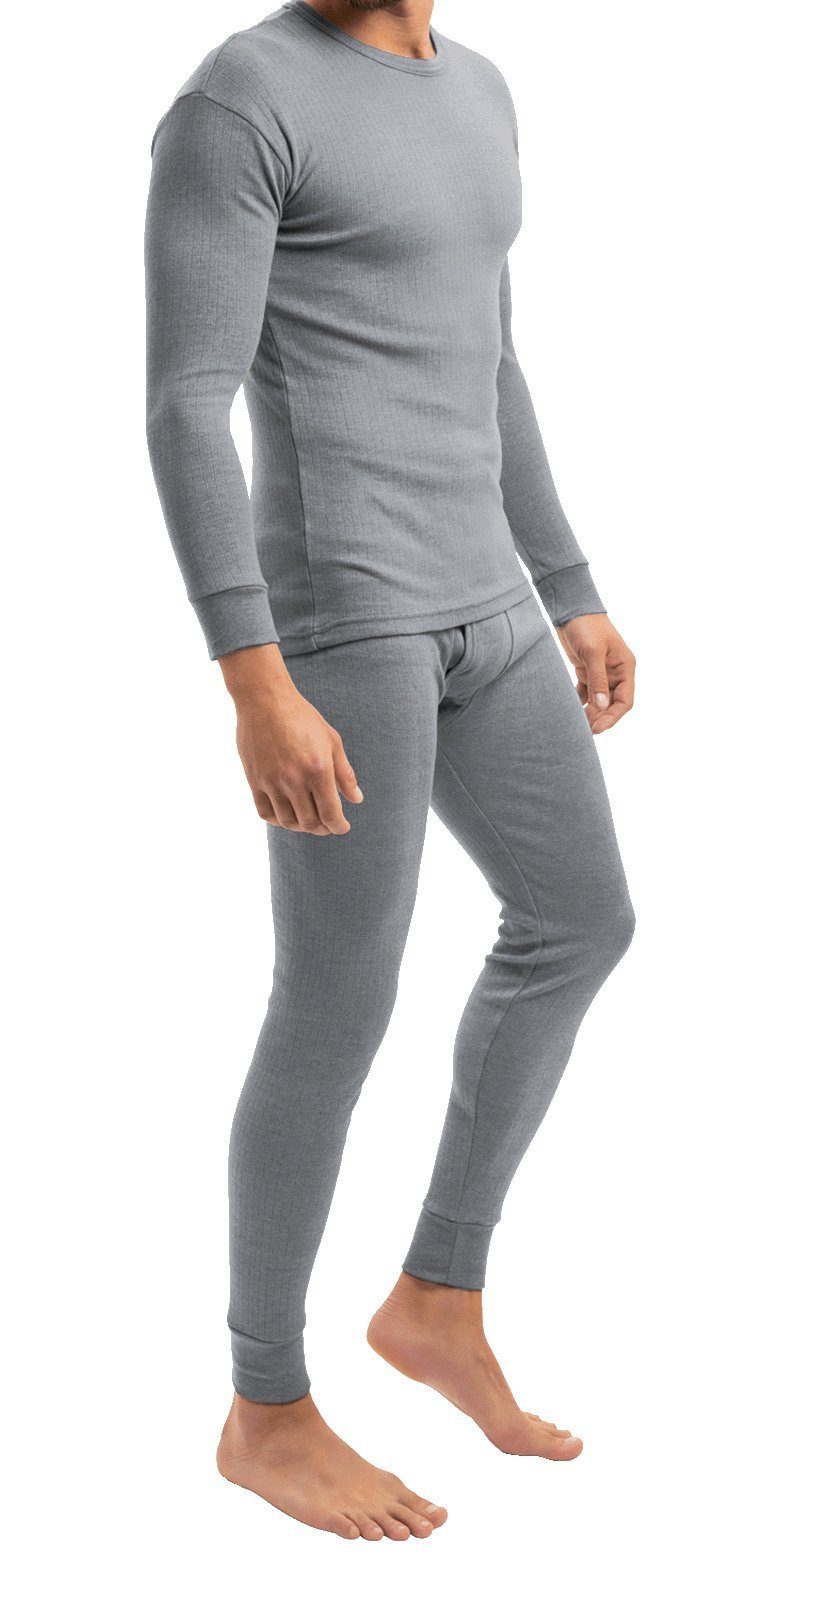 Markenwarenshop-Style Thermounterhose Herren Thermo Lange Unterhose und  Unterhemd HEAT BOOSTER Gr, L Farbe: